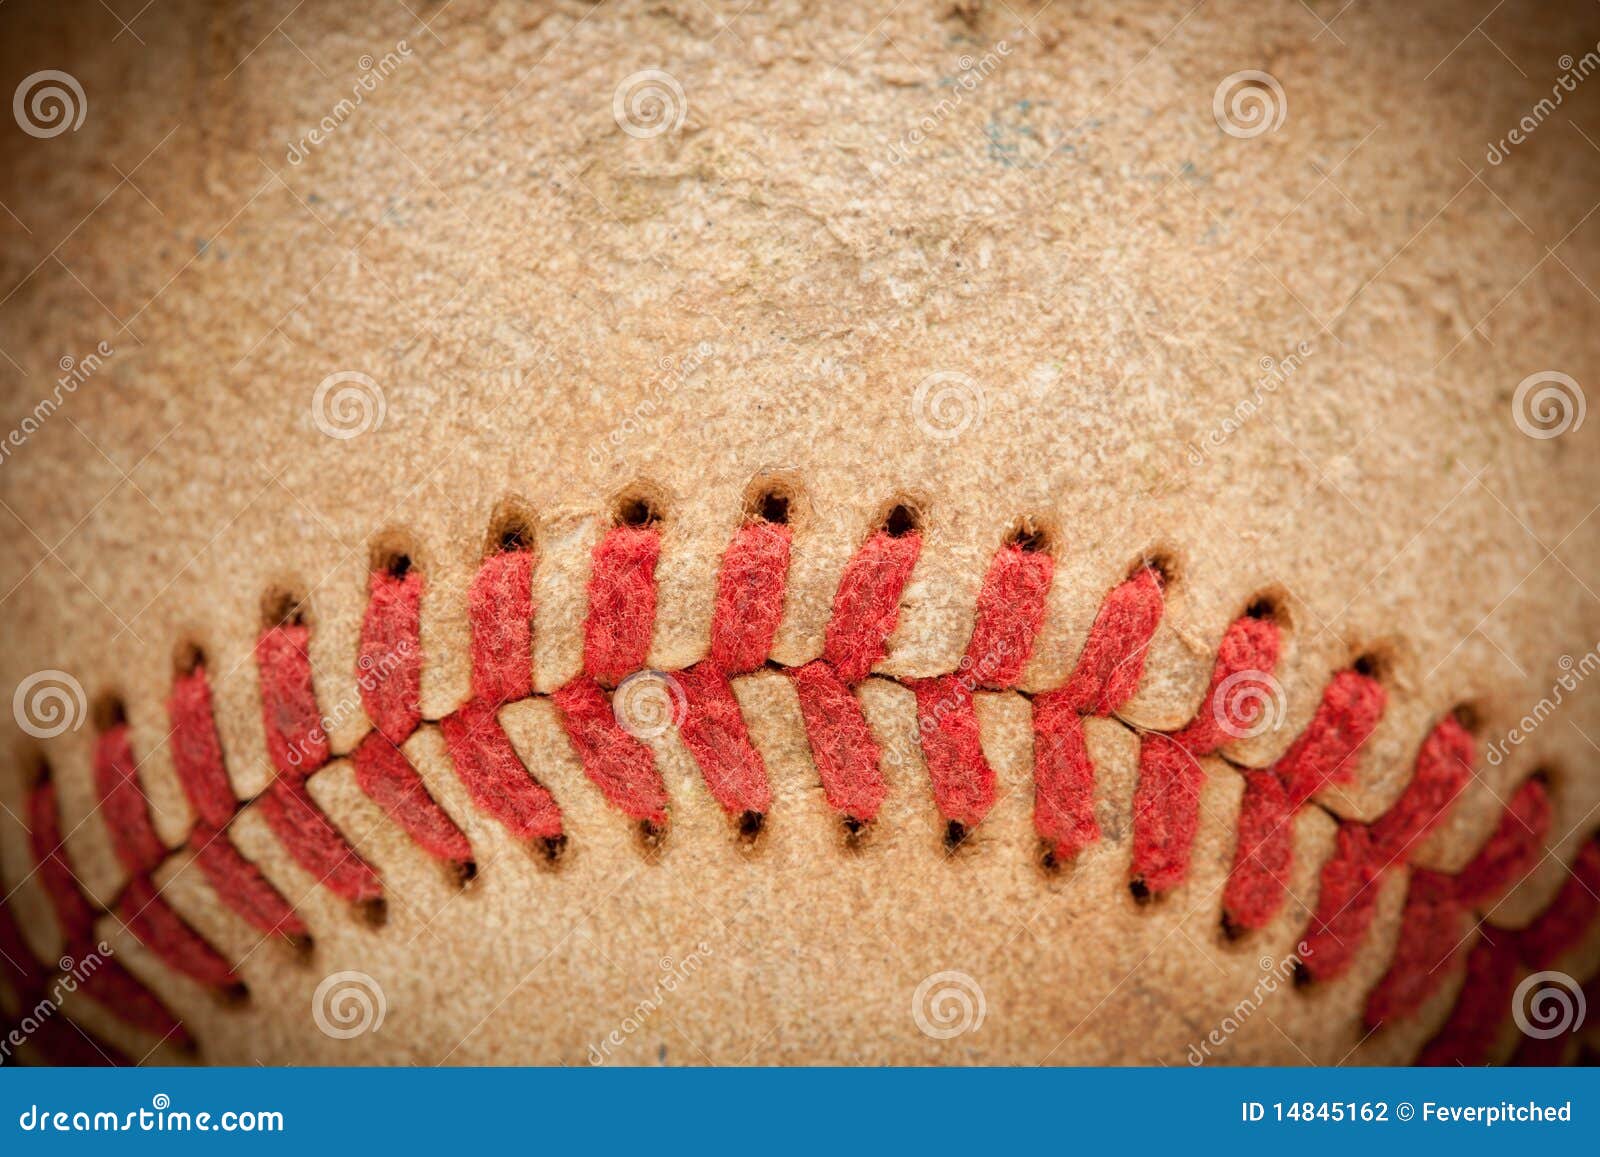 macro detail of worn baseball